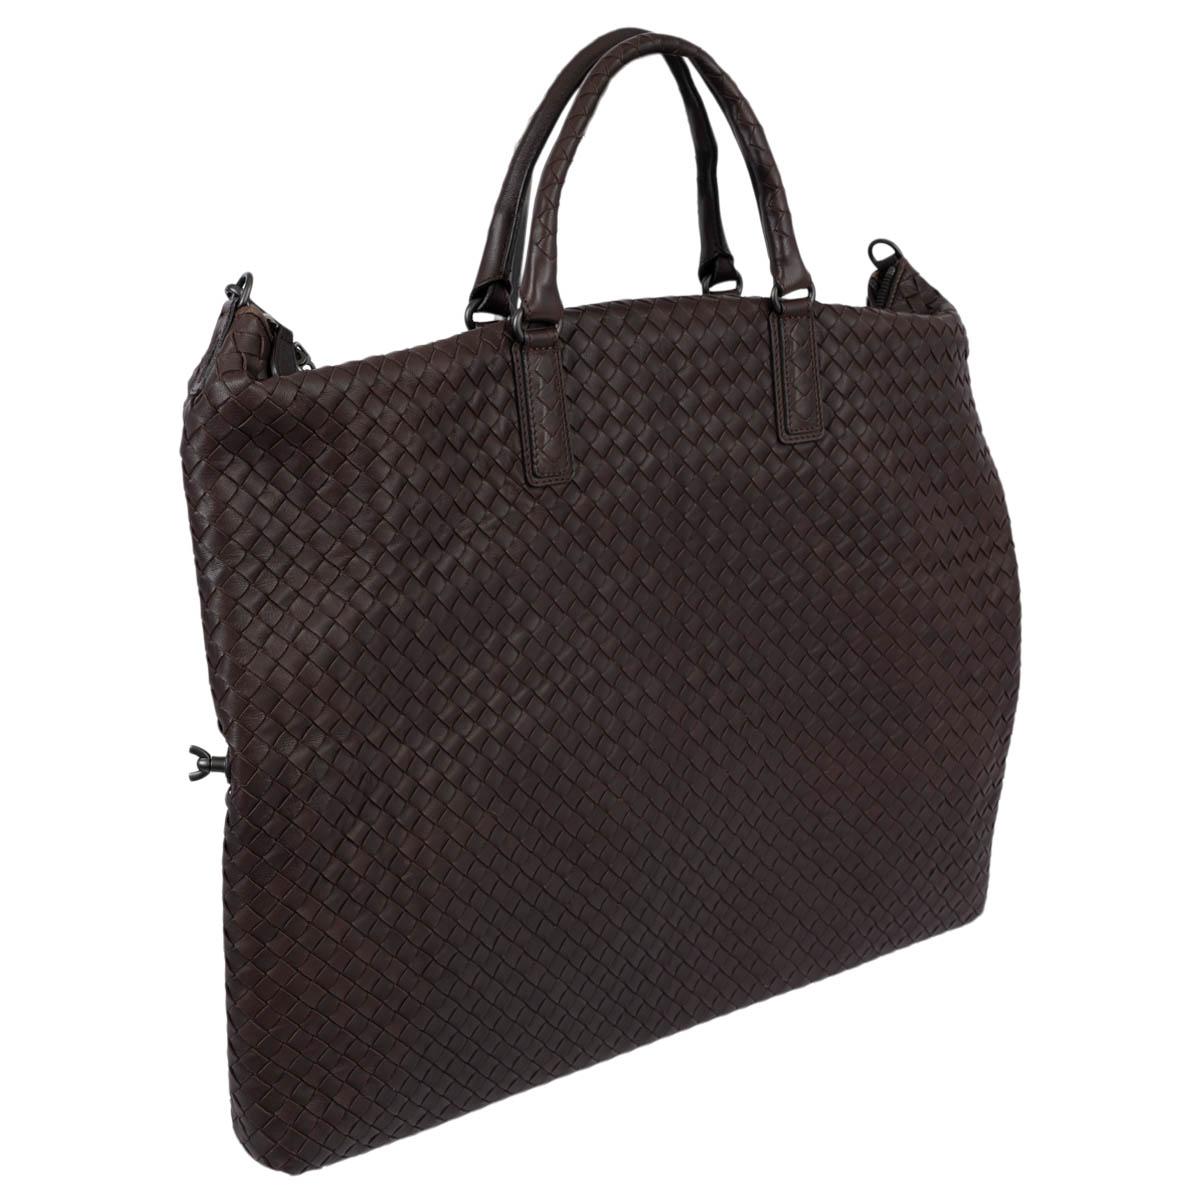 Women's BOTTEGA VENETA Ebano brown leather INTRECCIATO MAXI CONVERTIBLE TOTE Bag For Sale